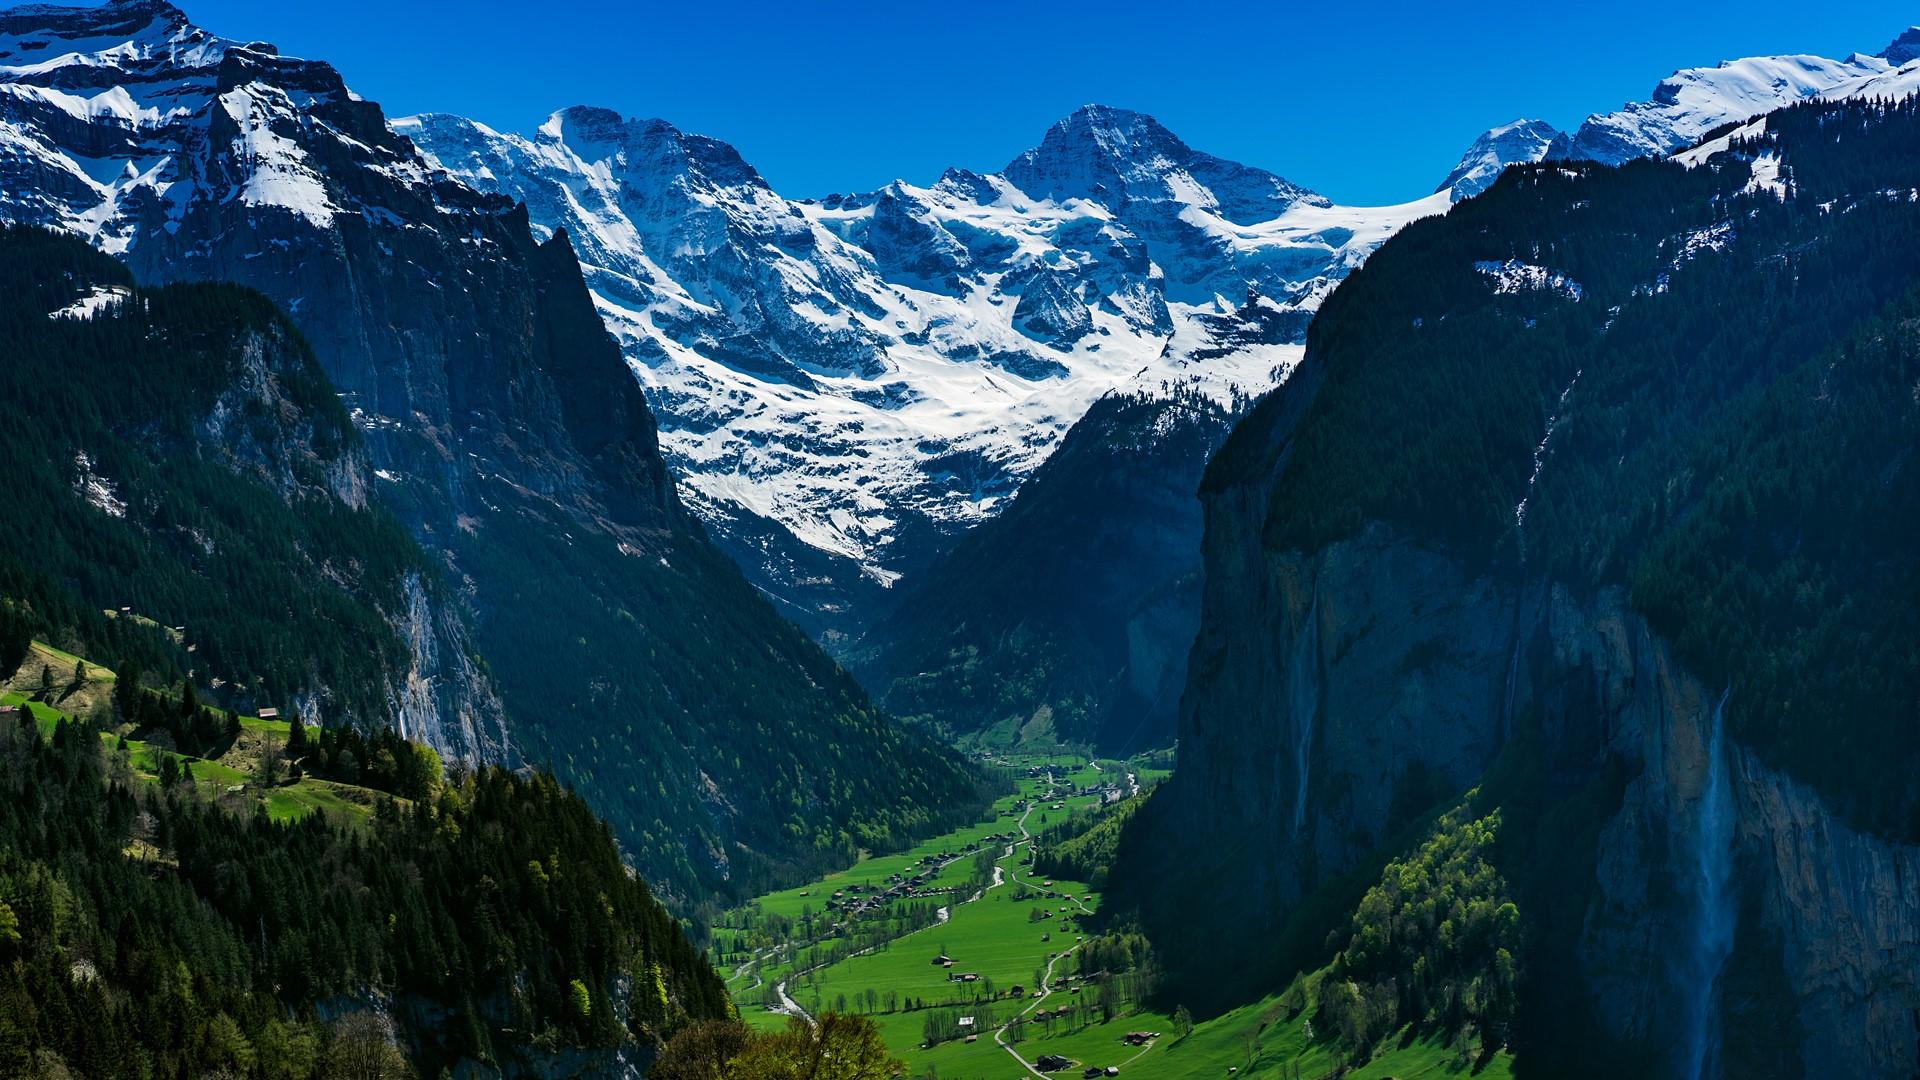 Mountain village Wengen in Switzerland Alps, Lauterbrunnen